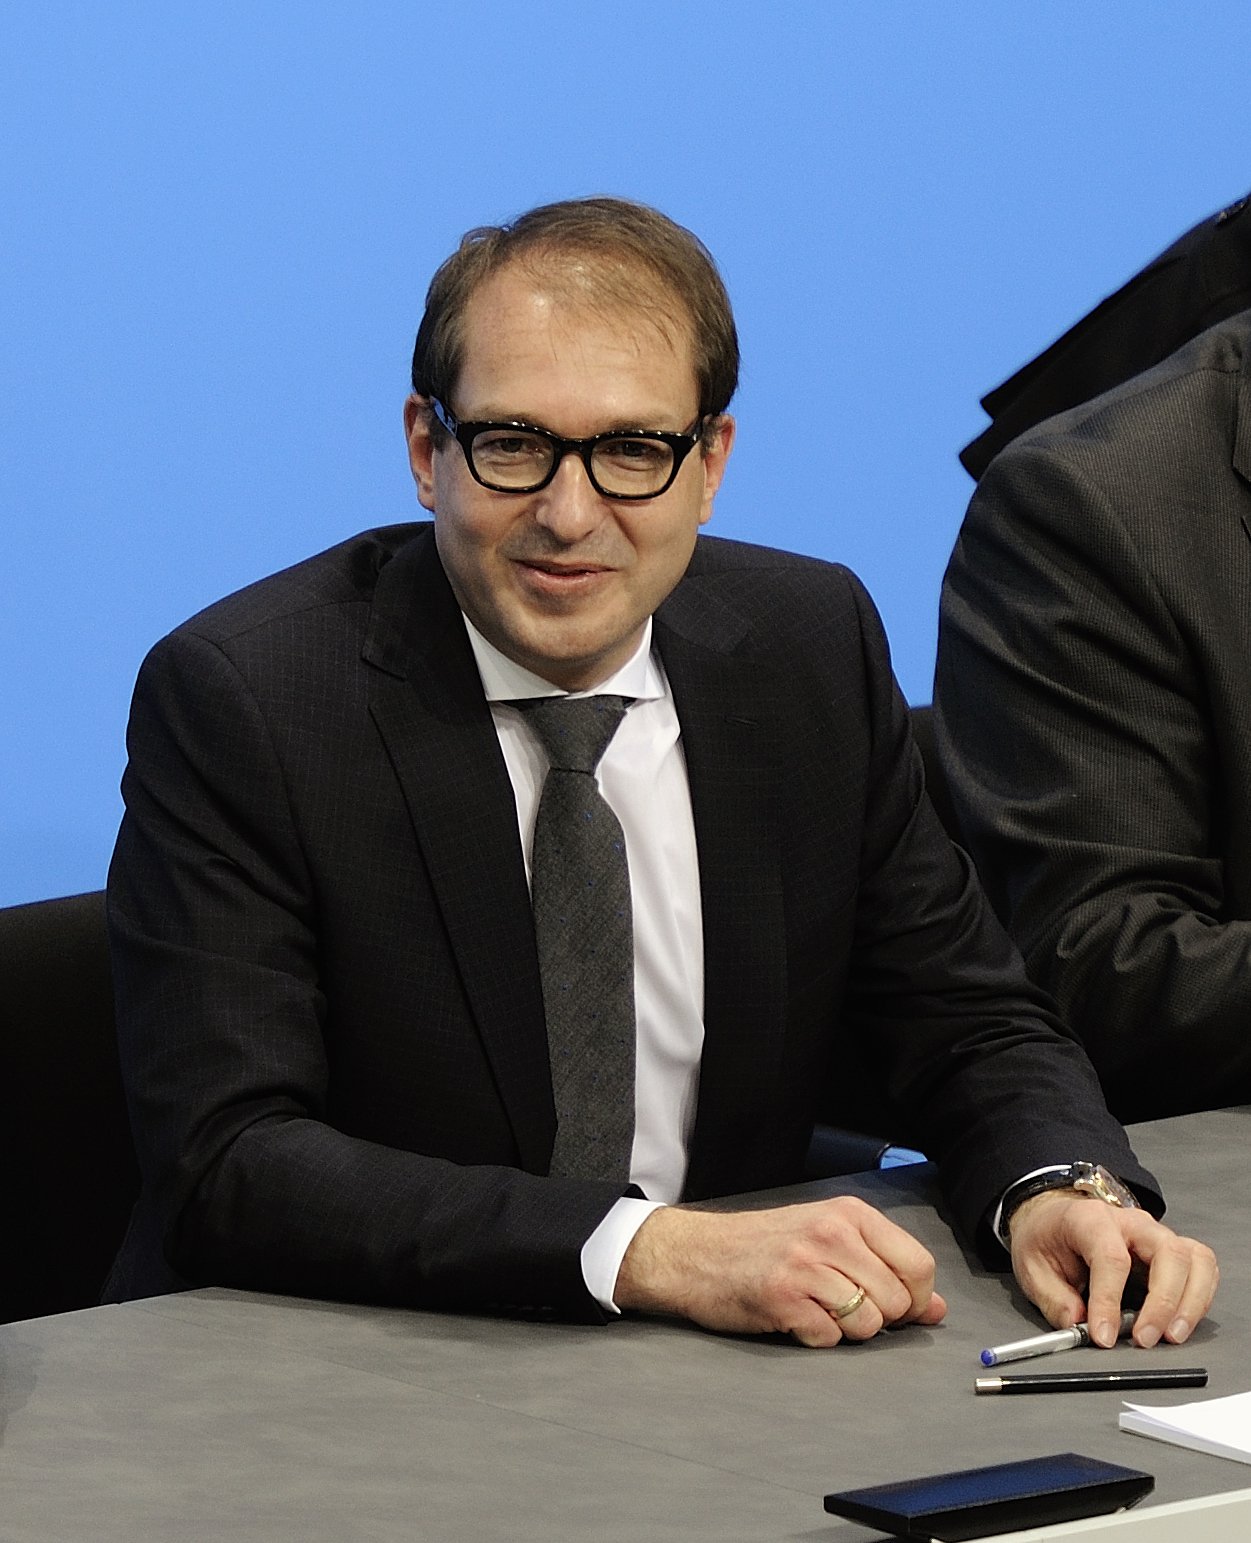 El líder de la CSU al Bundestag considera "legítima" la causa independentista